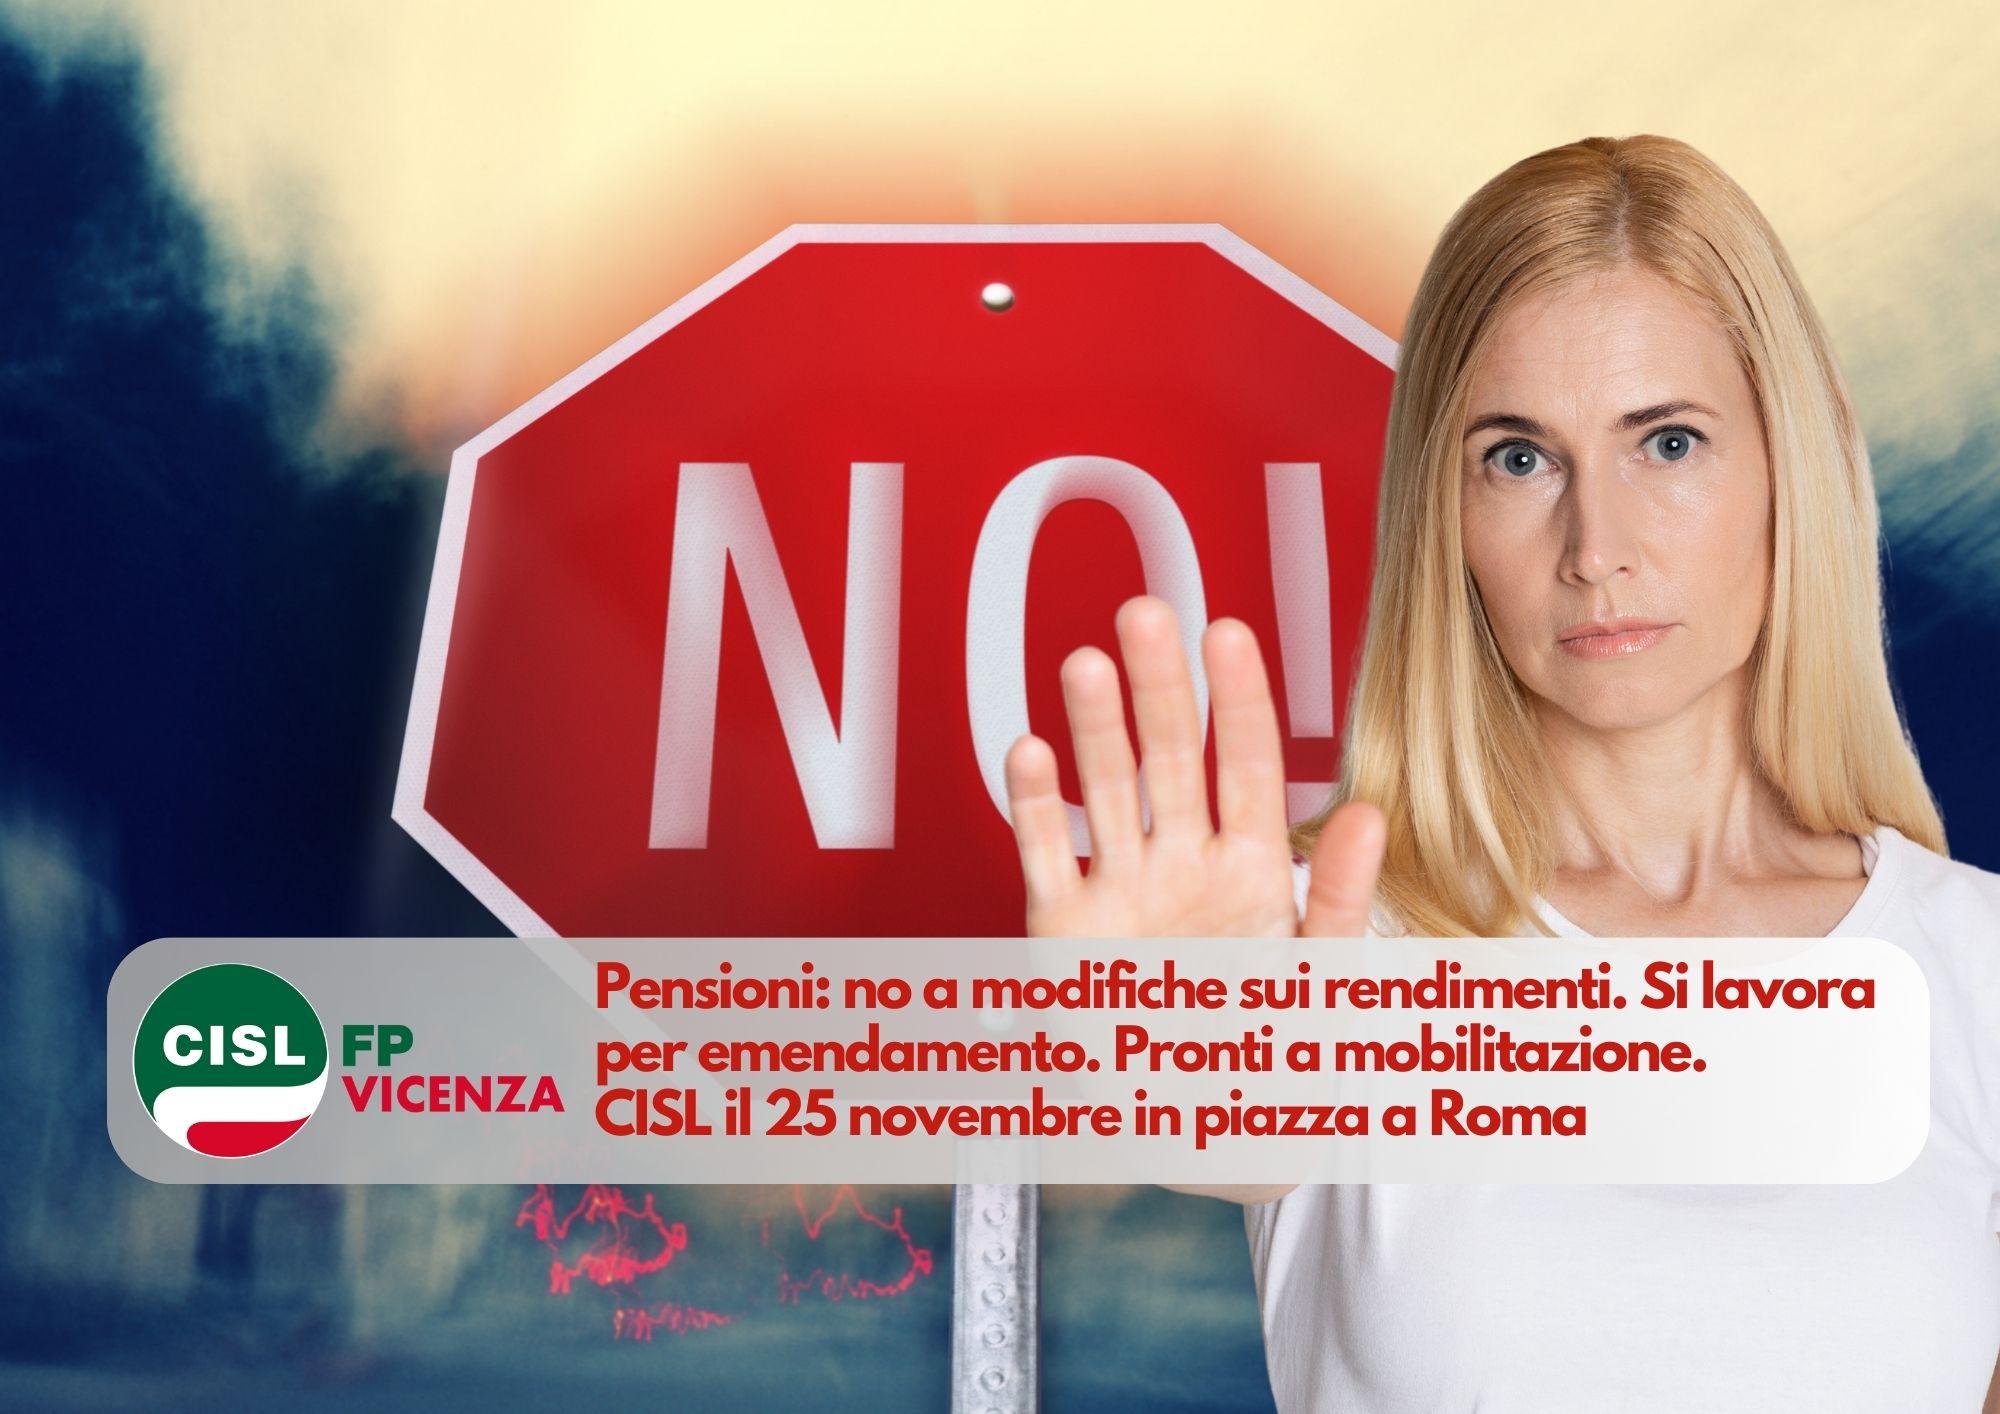 CISL FP Vicenza. Pensioni: no a modifiche sui rendimenti. Si lavora per emendamento. Pronti a mobilitazione